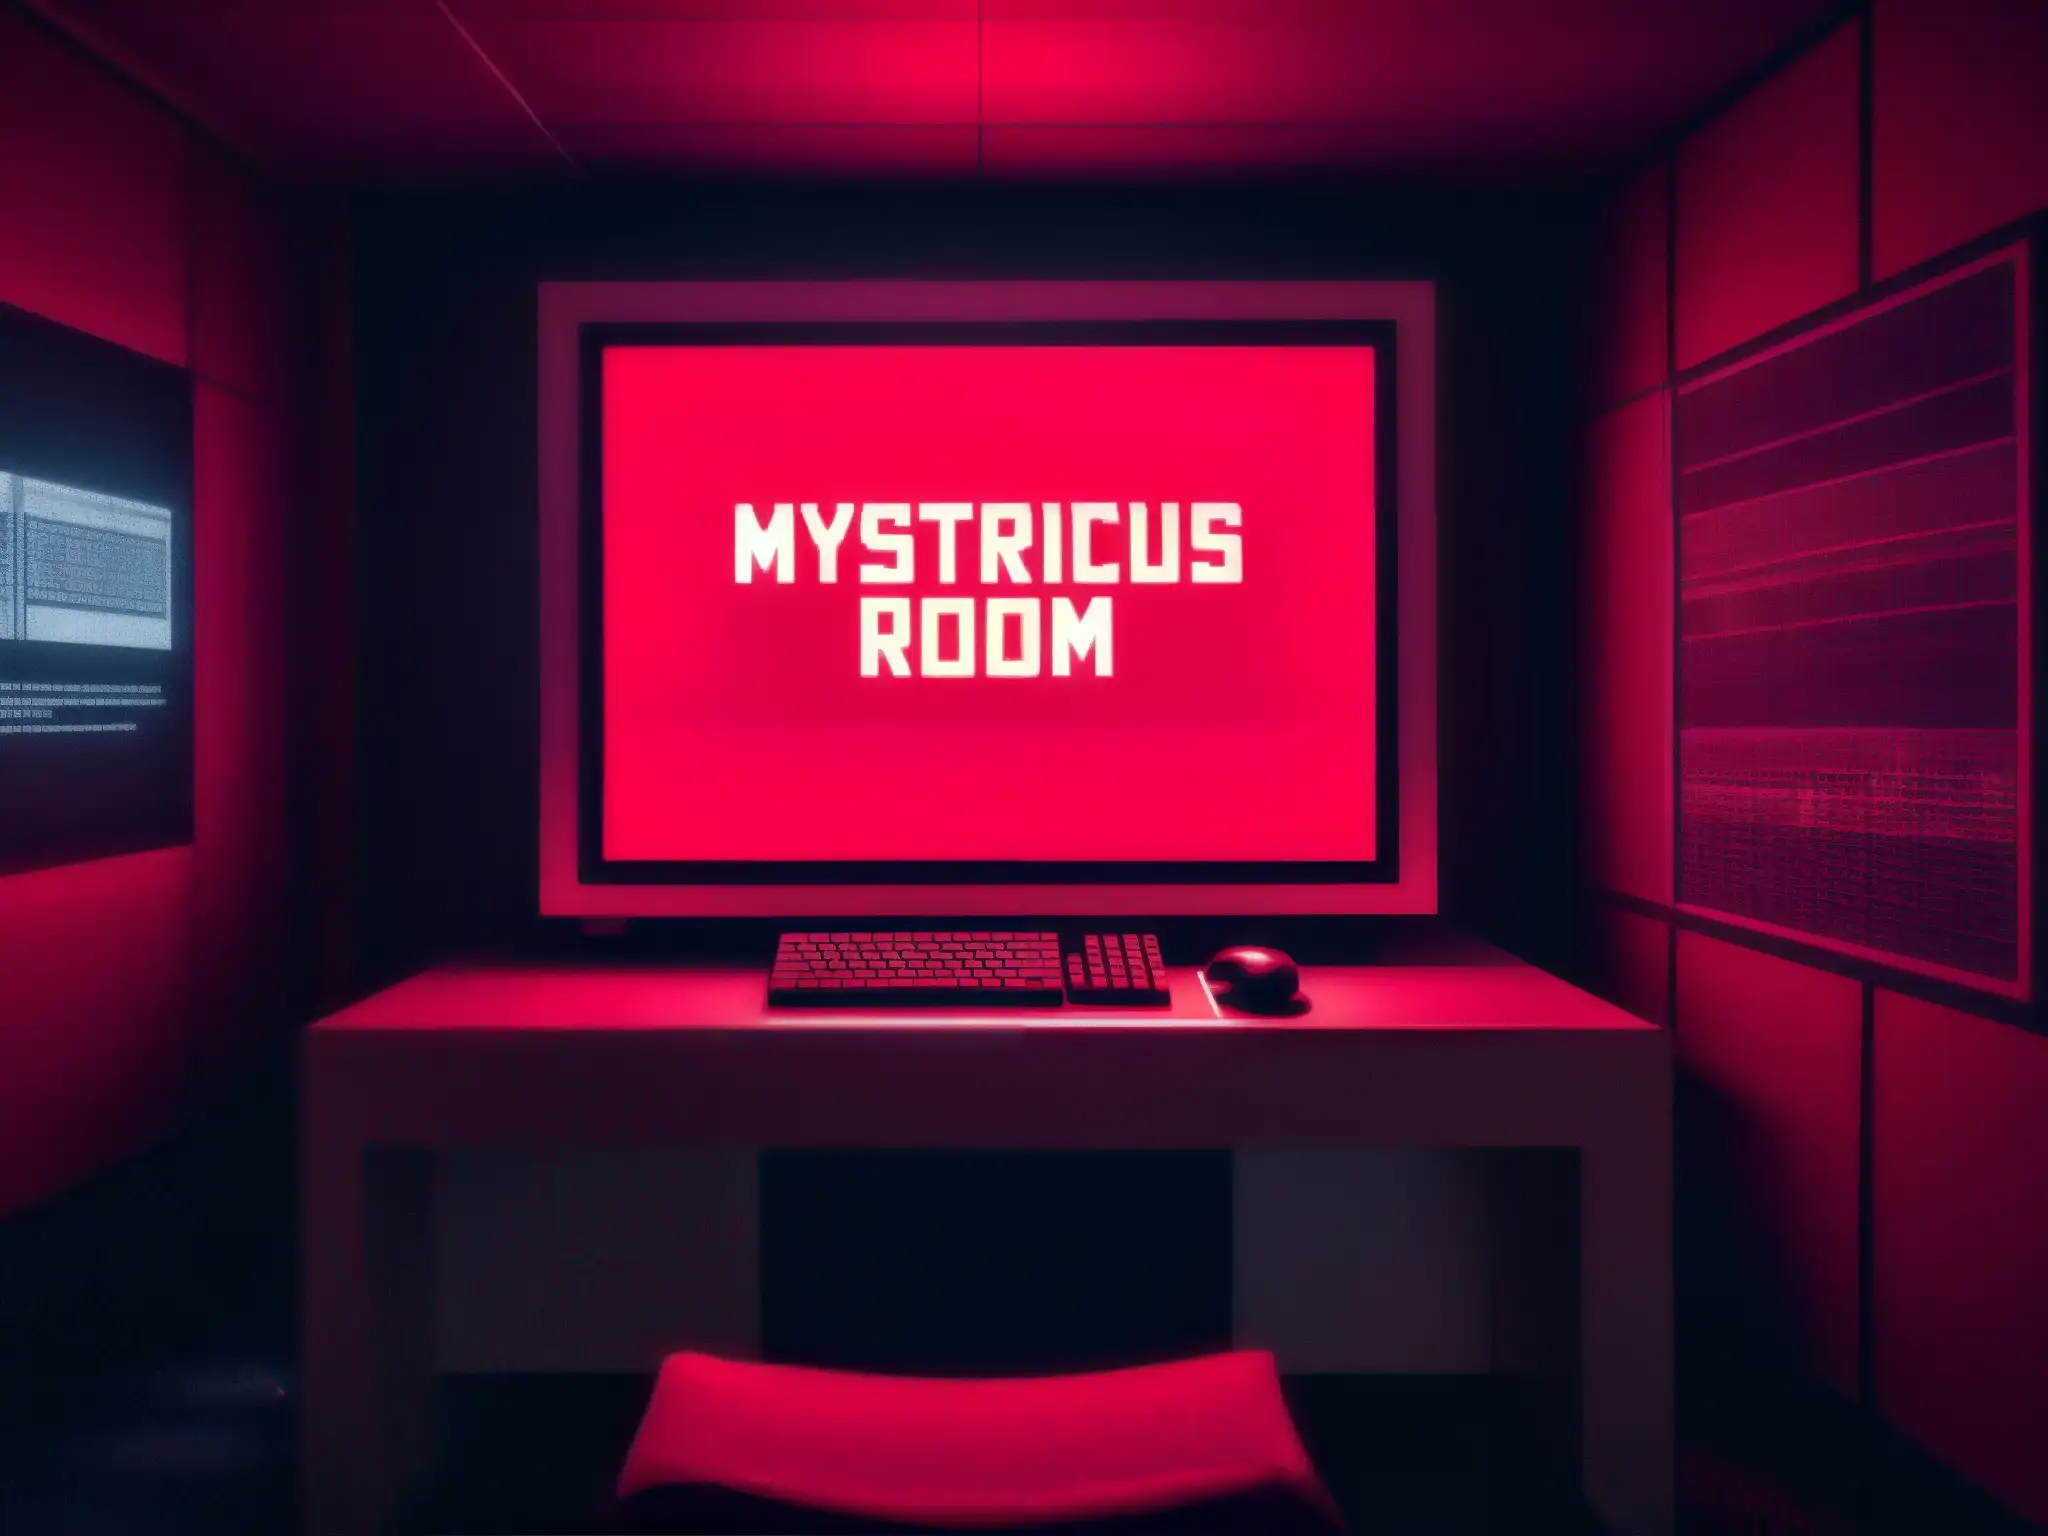 Escena inquietante en una habitación roja pixelada con figuras misteriosas